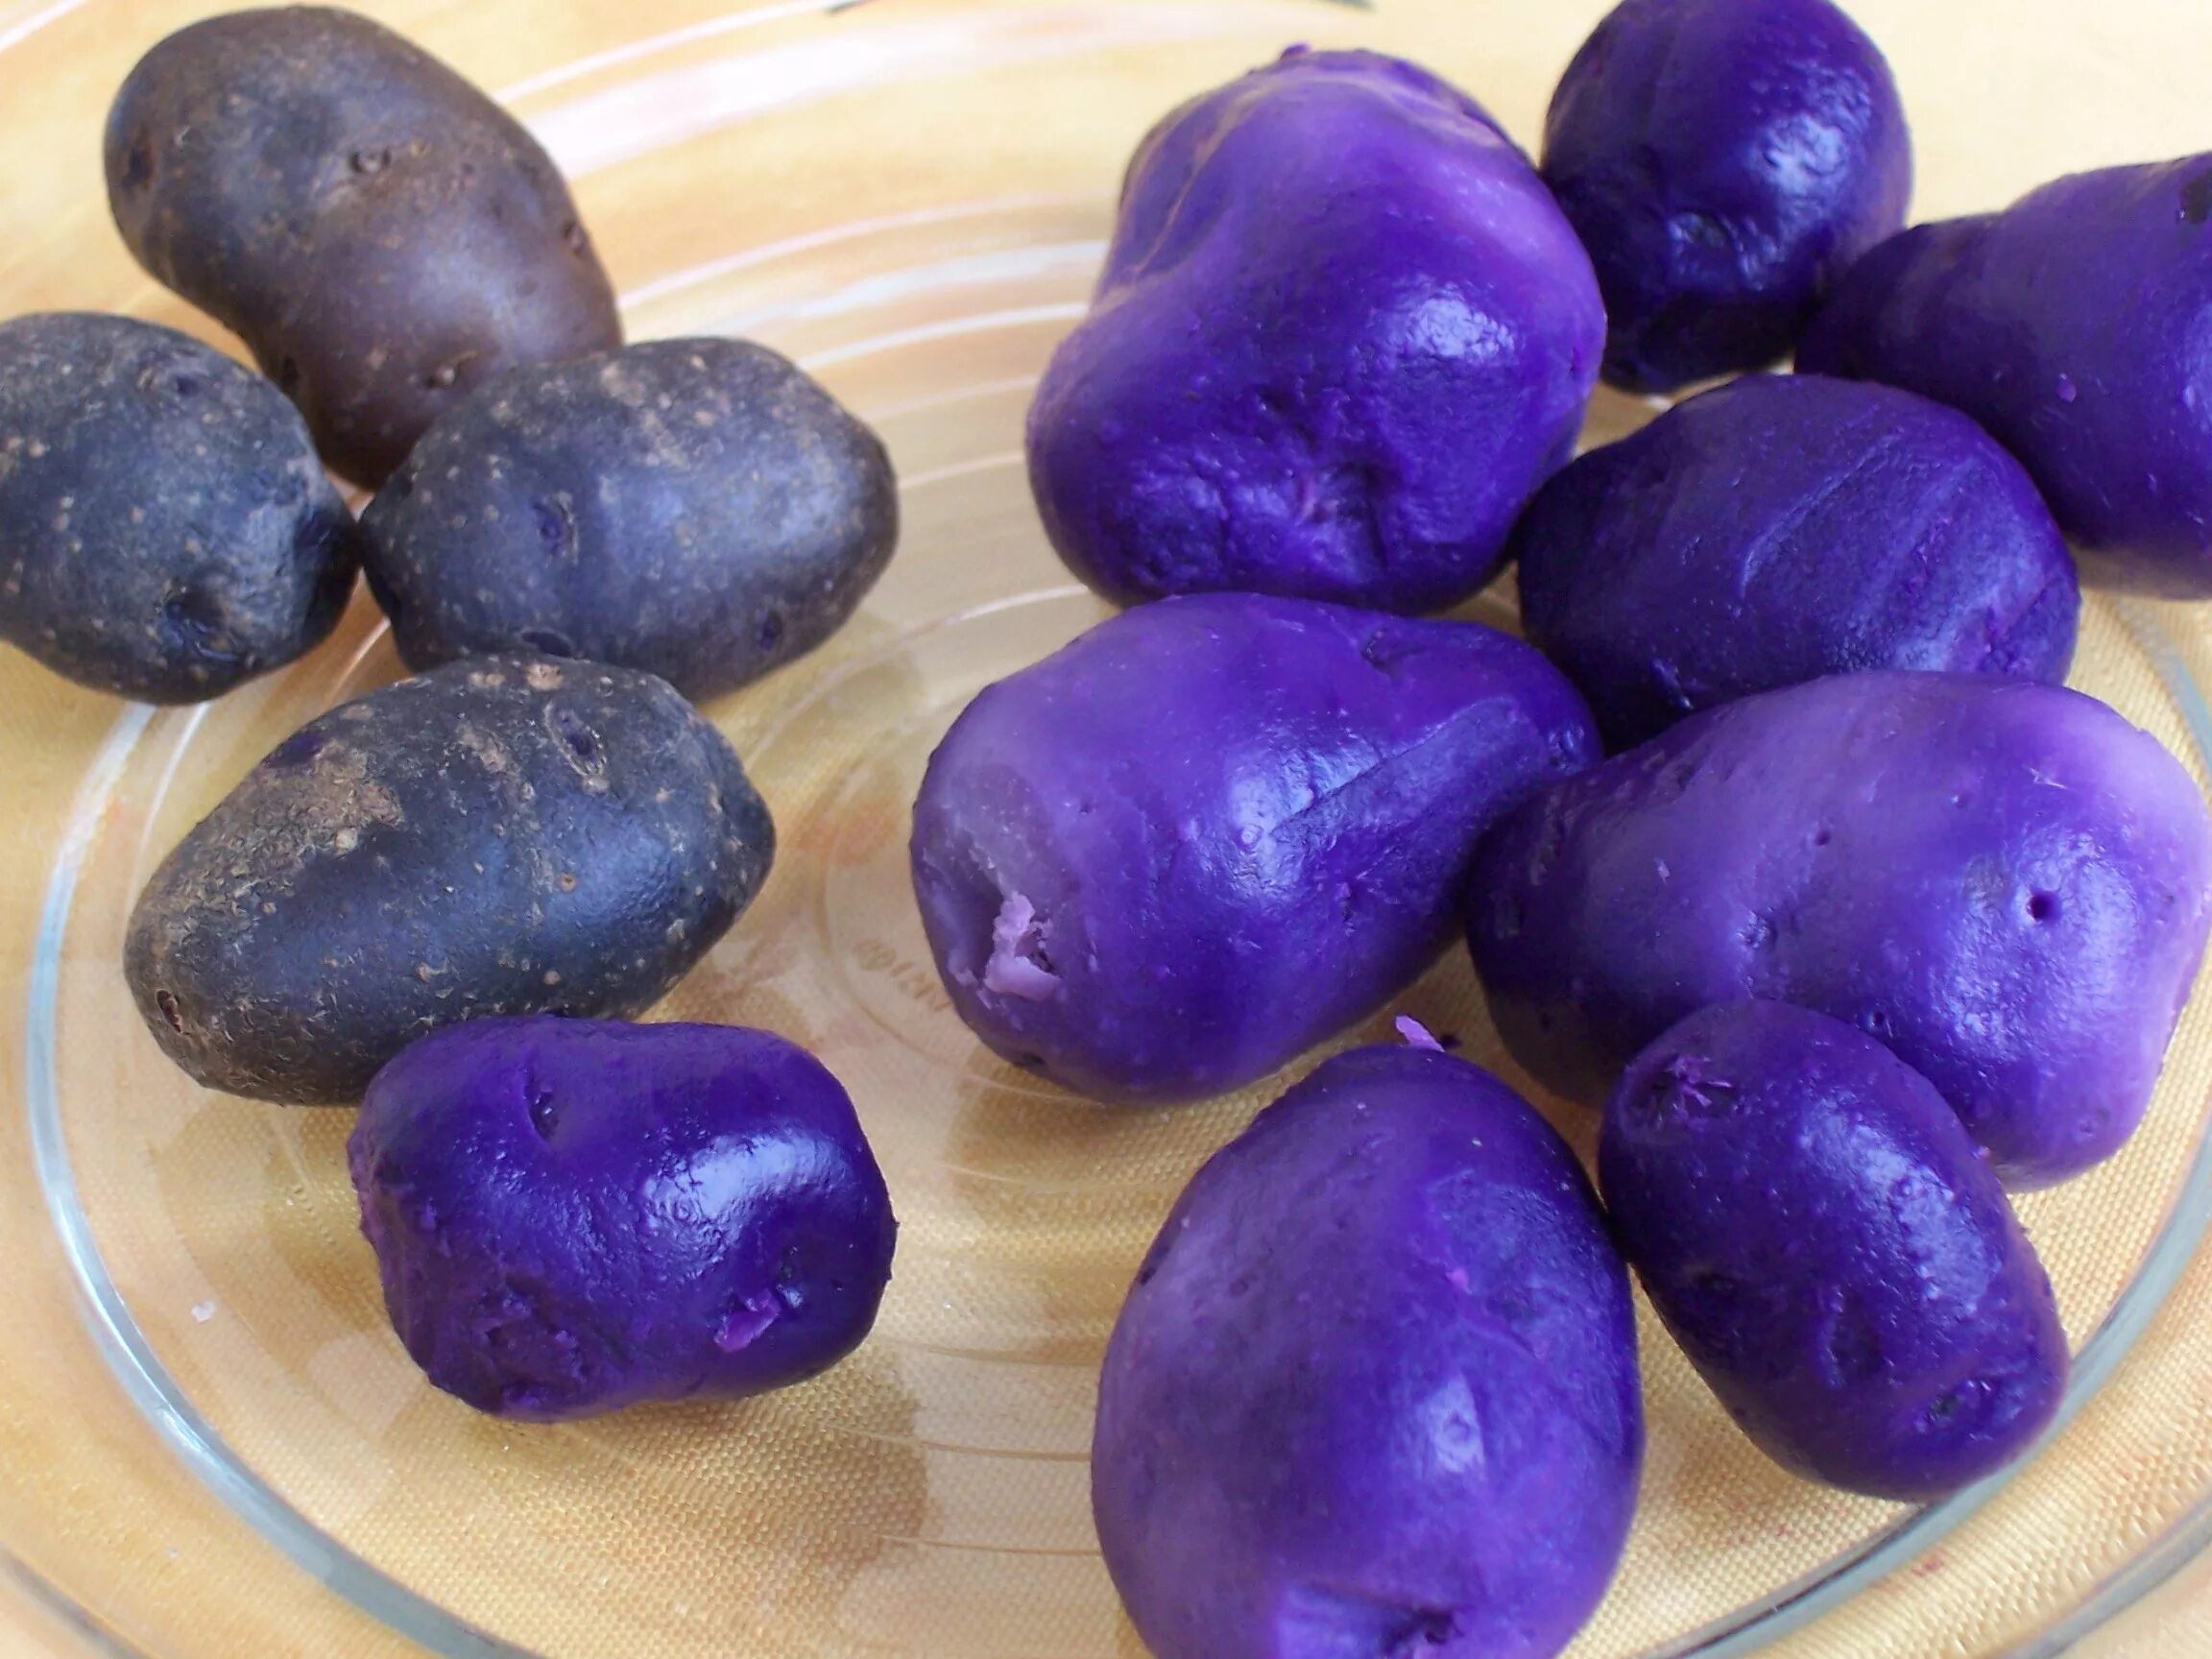 Картошка овощ или фрукт. Вителот фиолетовый картофель. Сорт картофеля перуанский фиолетовый (Purple Peruvian). Картофель Пурпл Конго. Сорт картофеля Linzer blaue.